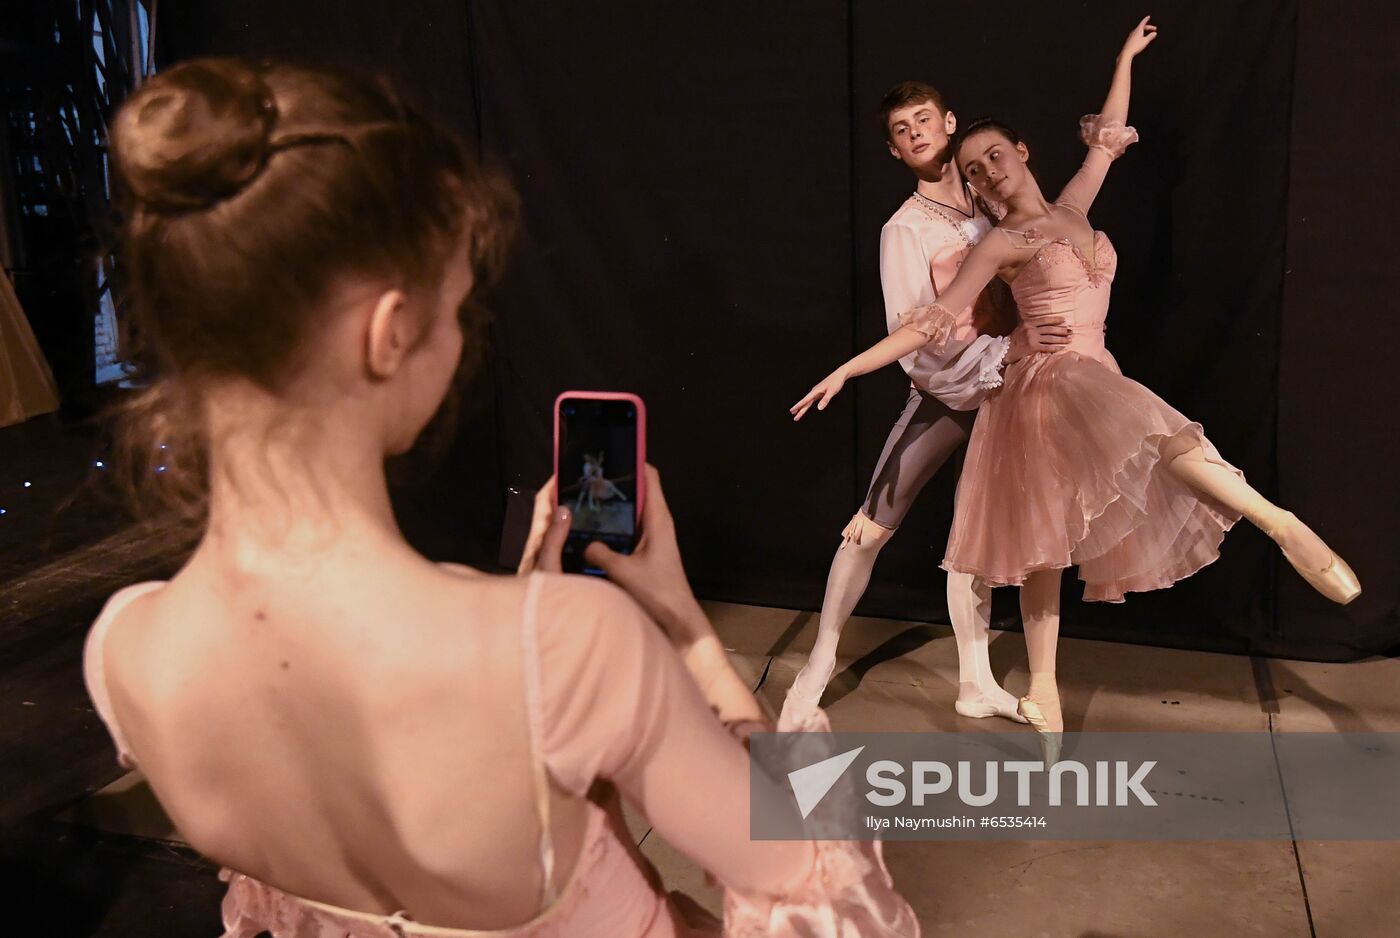 Russia Ballet Concert